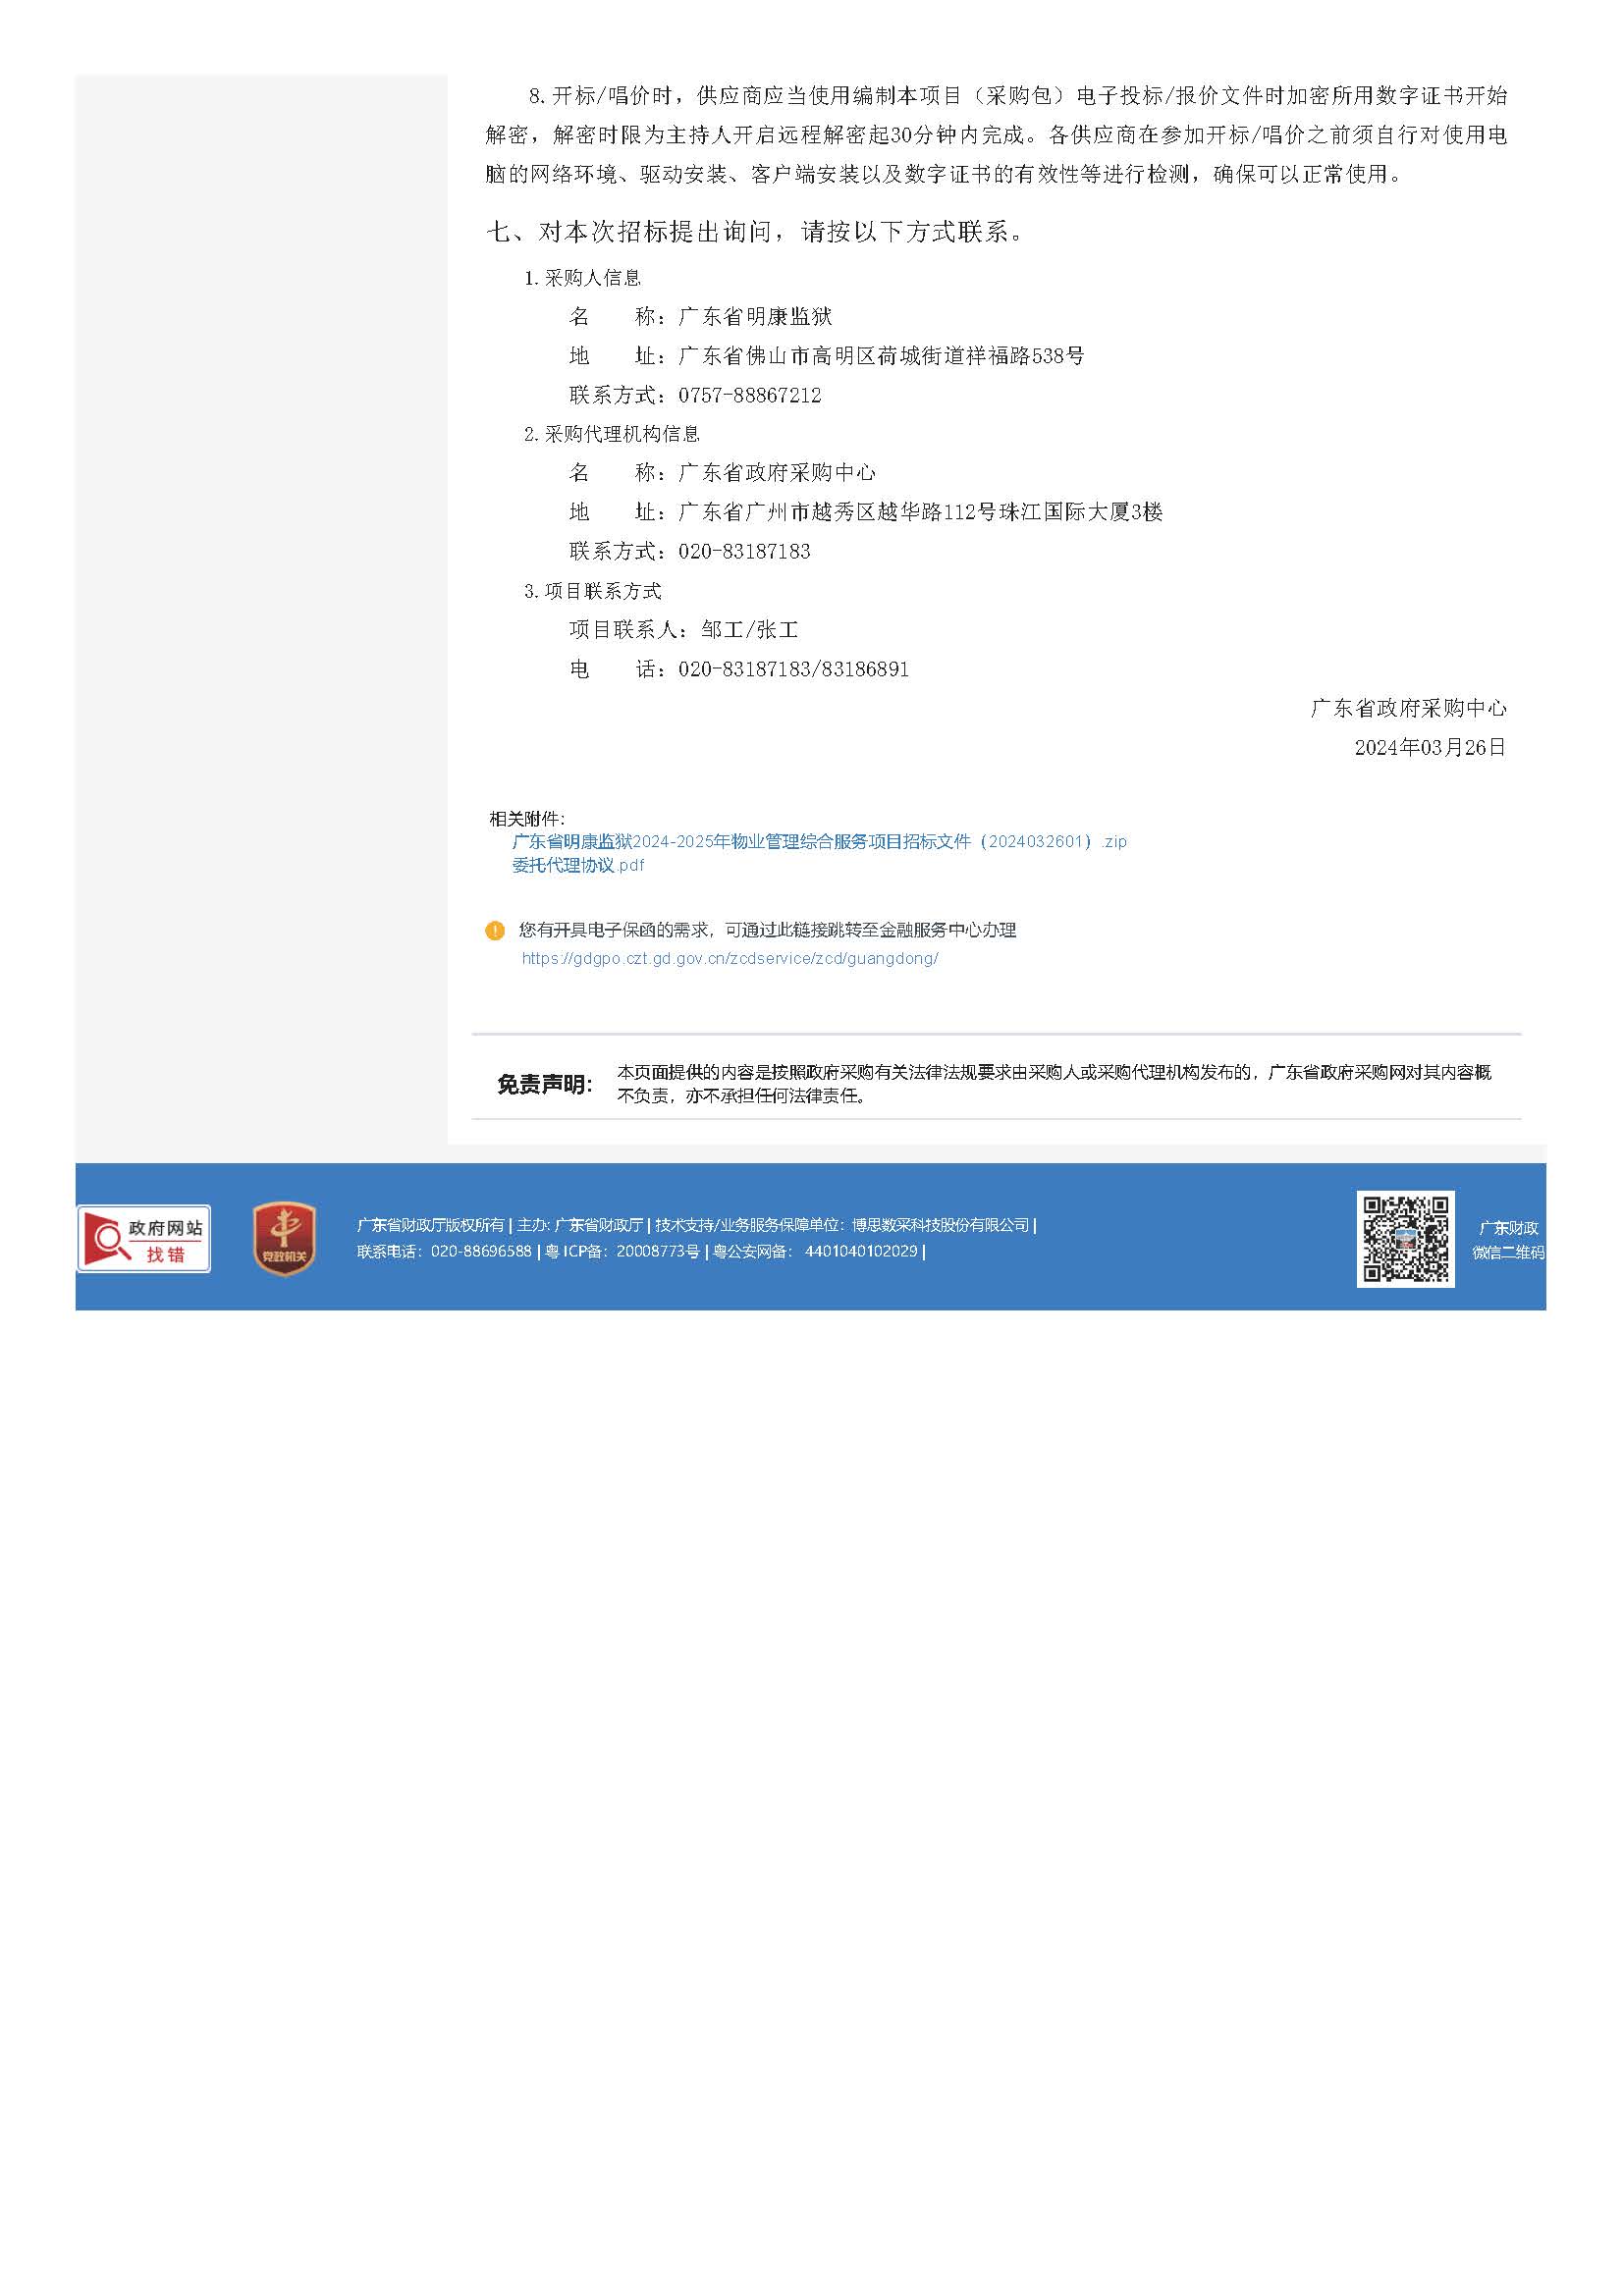 32.52广东省明康监狱2024-2025年物业管理综合服务项目招标公告_页面_3.jpg